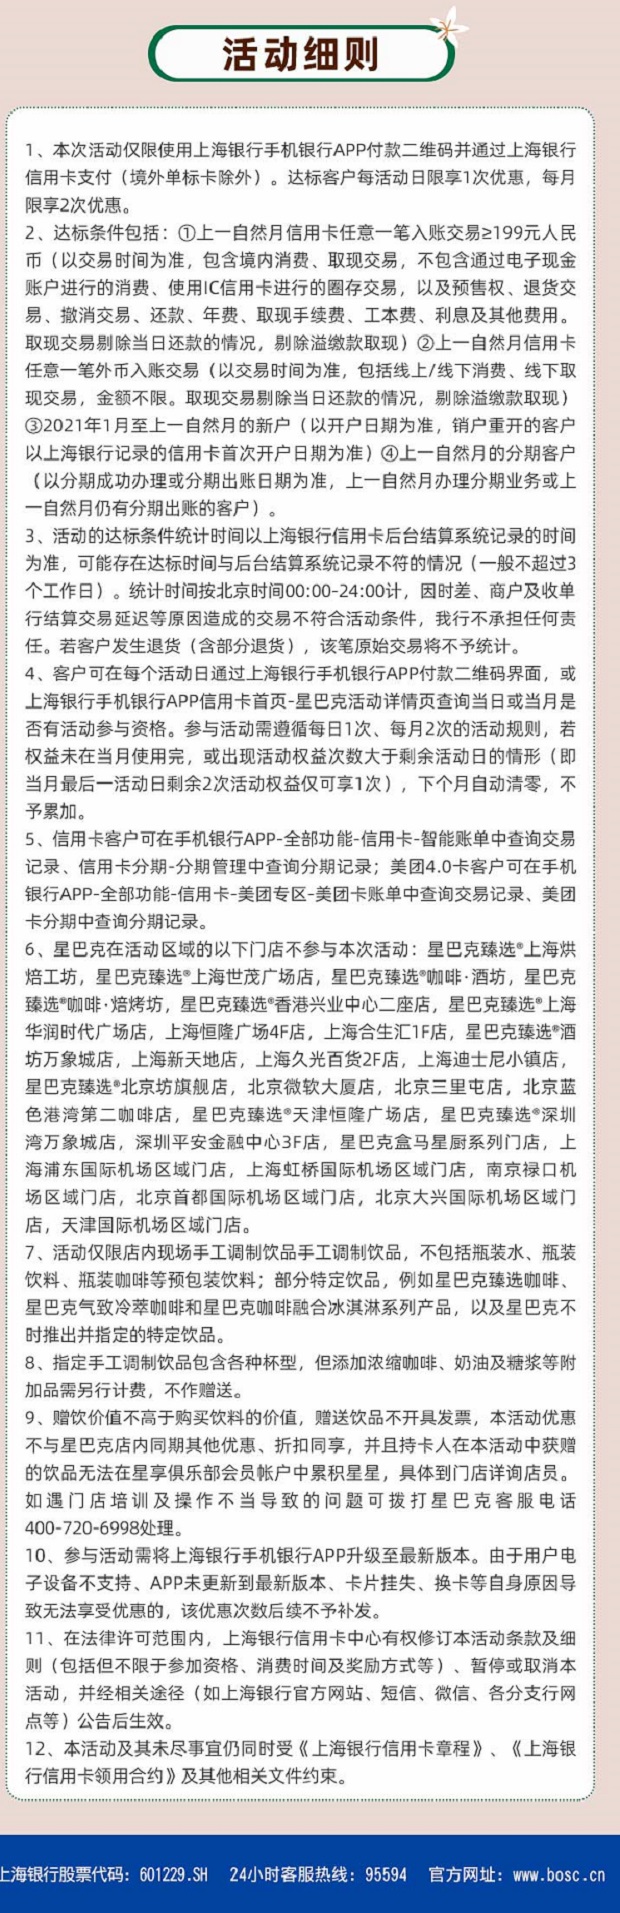 2021年4月14日上海银行信用卡优惠活动推荐